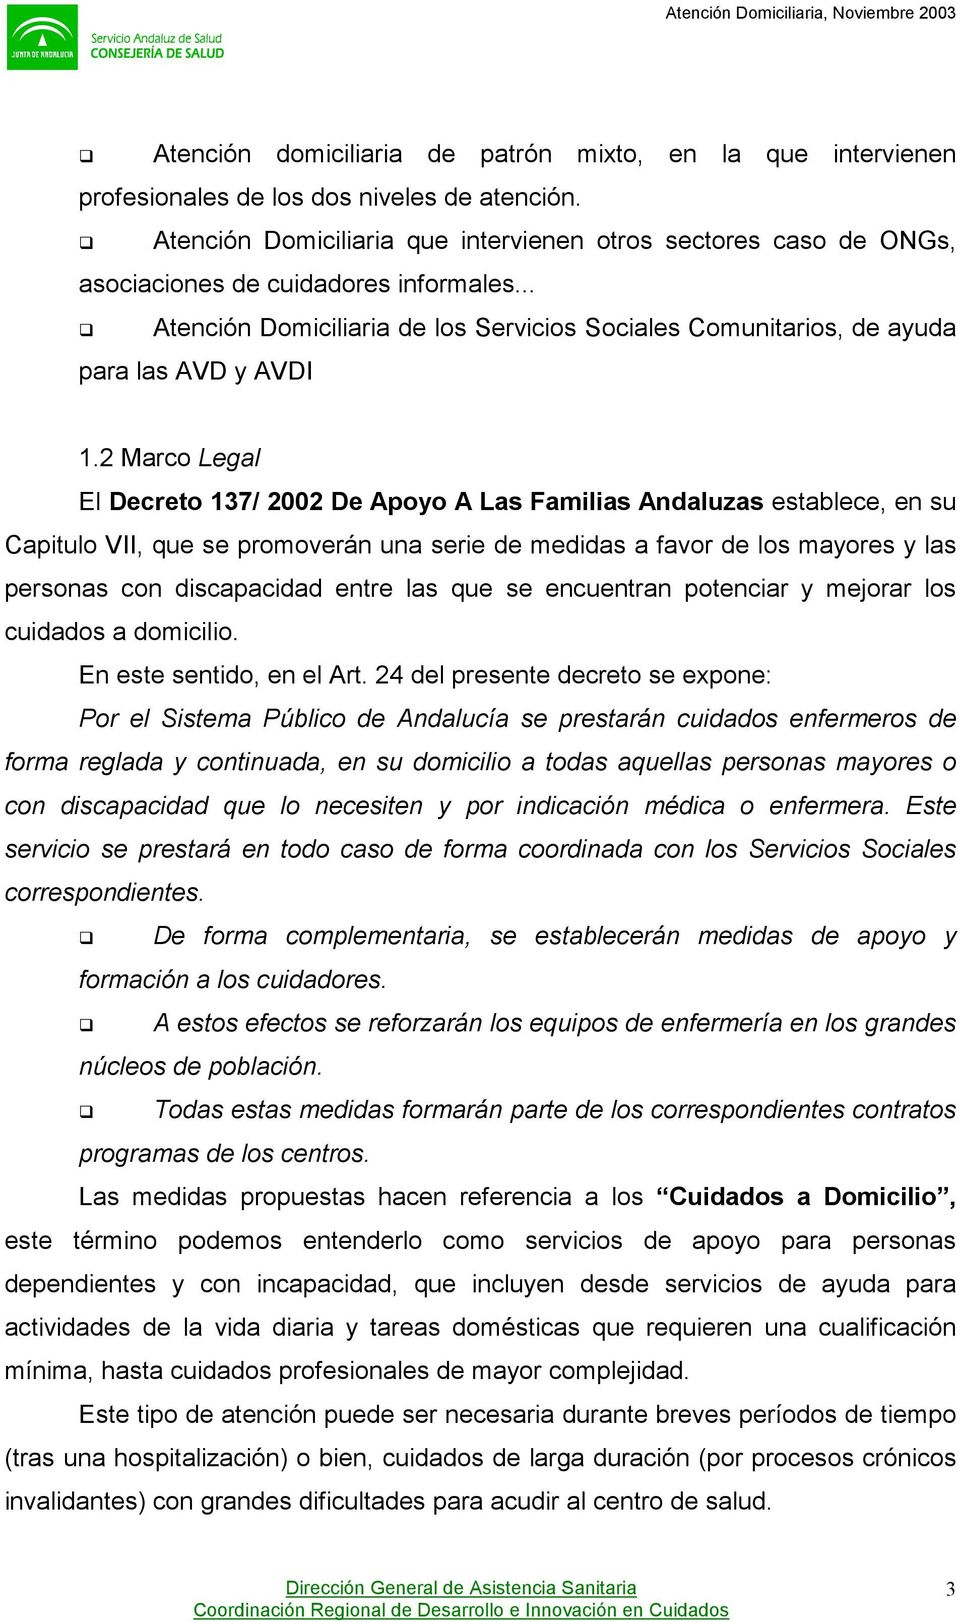 2 Marco Legal El Decreto 137/ 2002 De Apoyo A Las Familias Andaluzas establece, en su Capitulo VII, que se promoverán una serie de medidas a favor de los mayores y las personas con discapacidad entre